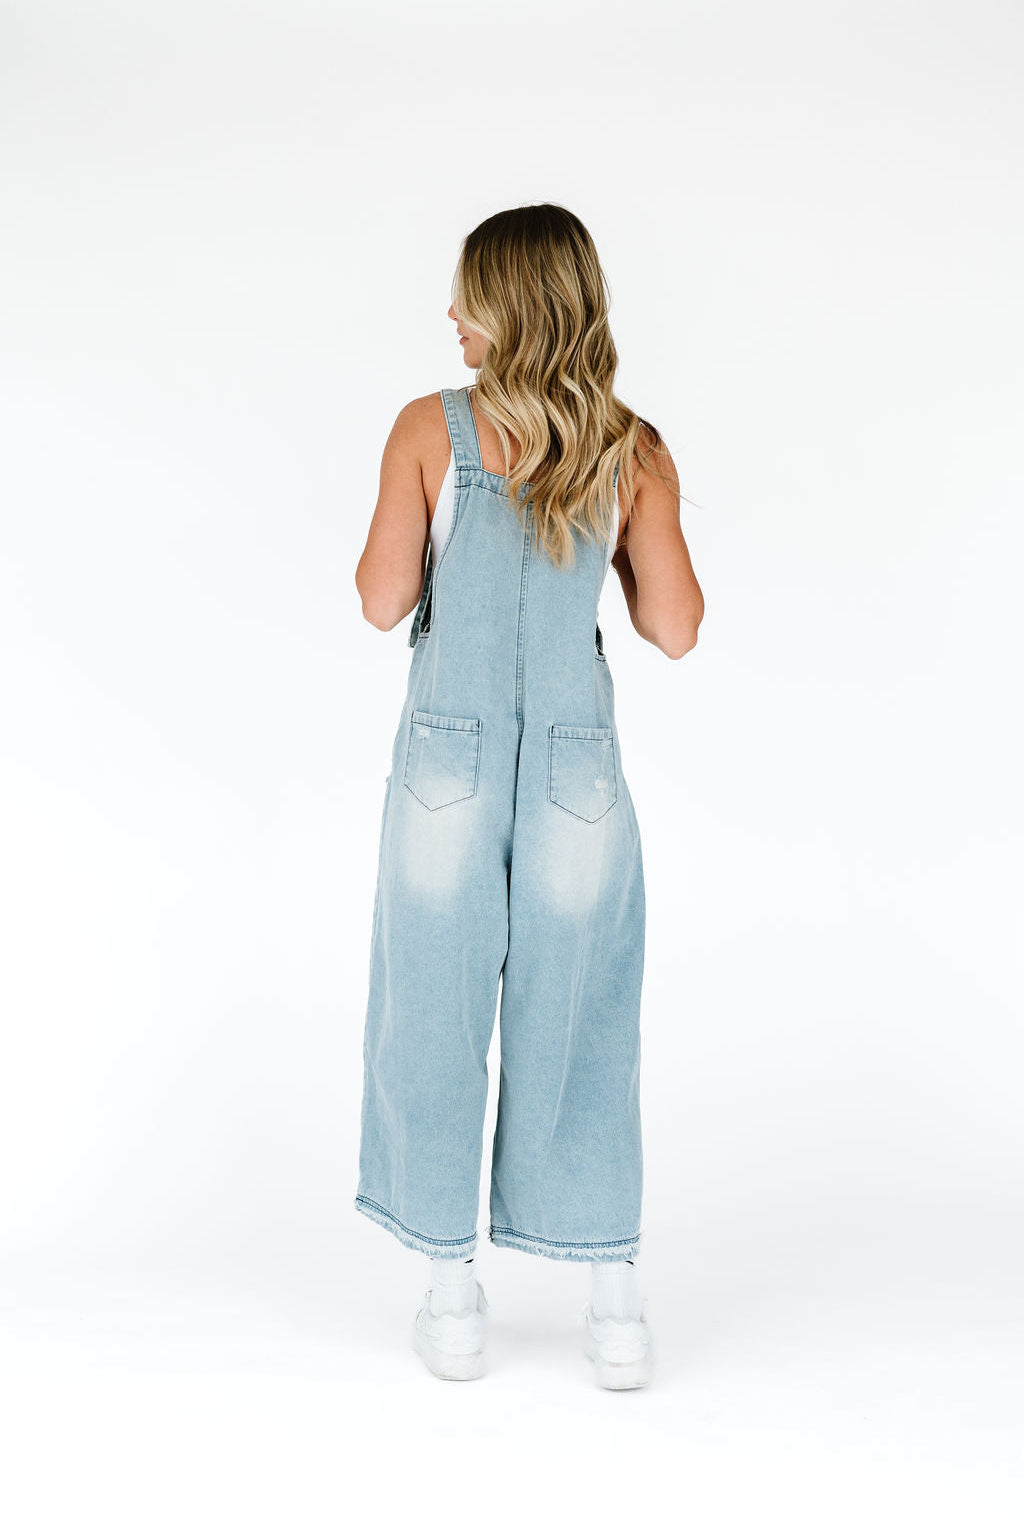 blue denim overalls for women